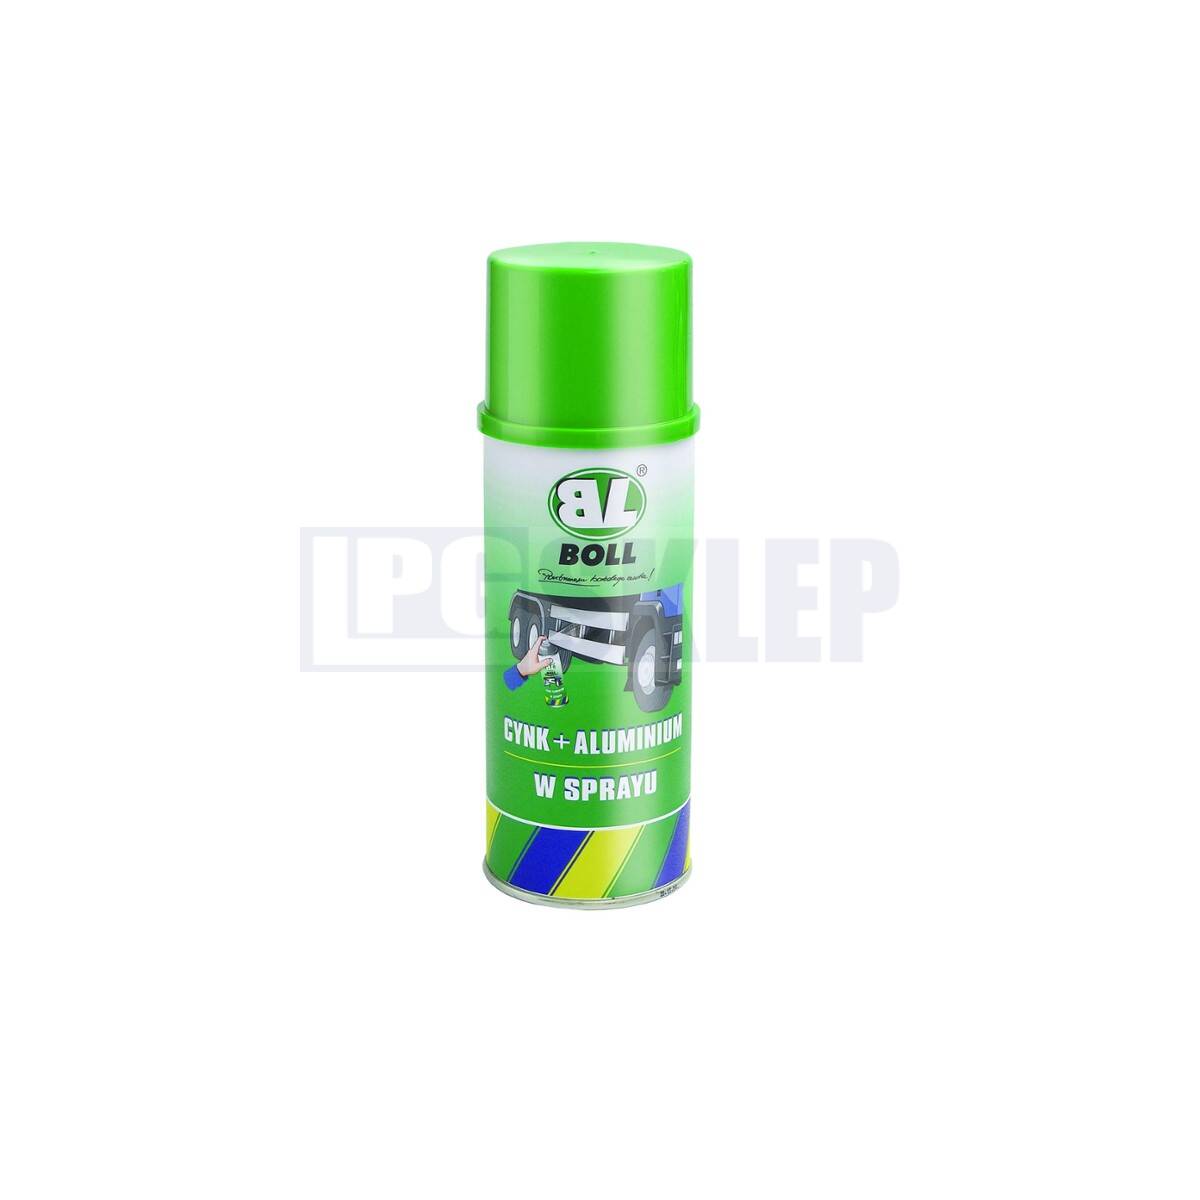 BOLL Cynk + aluminium - spray 400 ml (Zdjęcie 1)